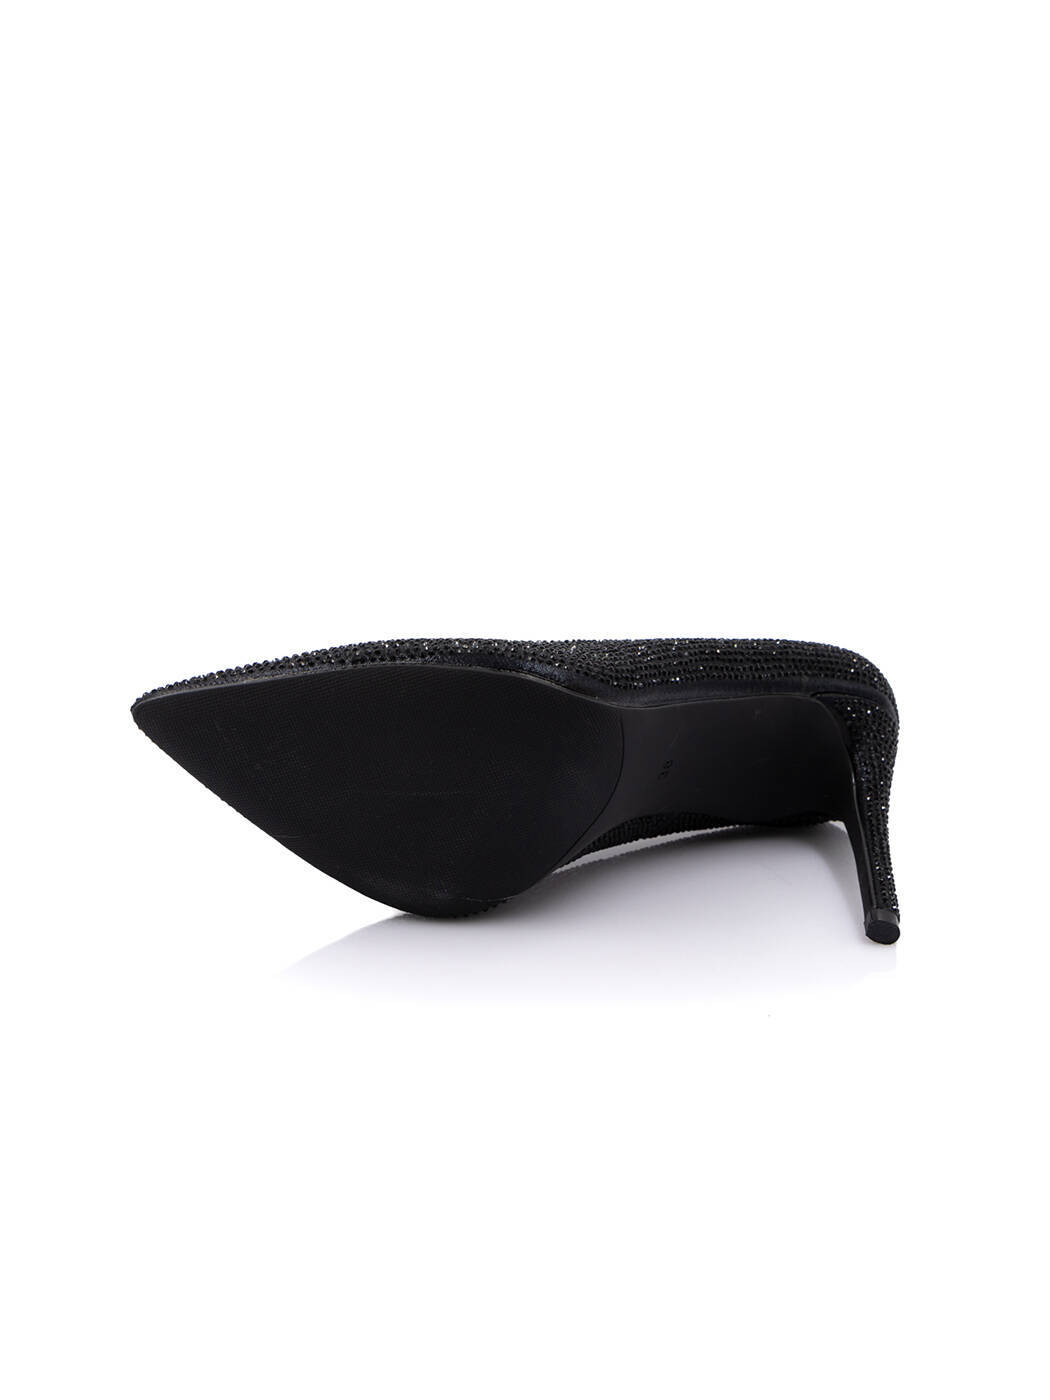 Туфли женские черные экокожа каблук шпилька демисезон 1M вид 2